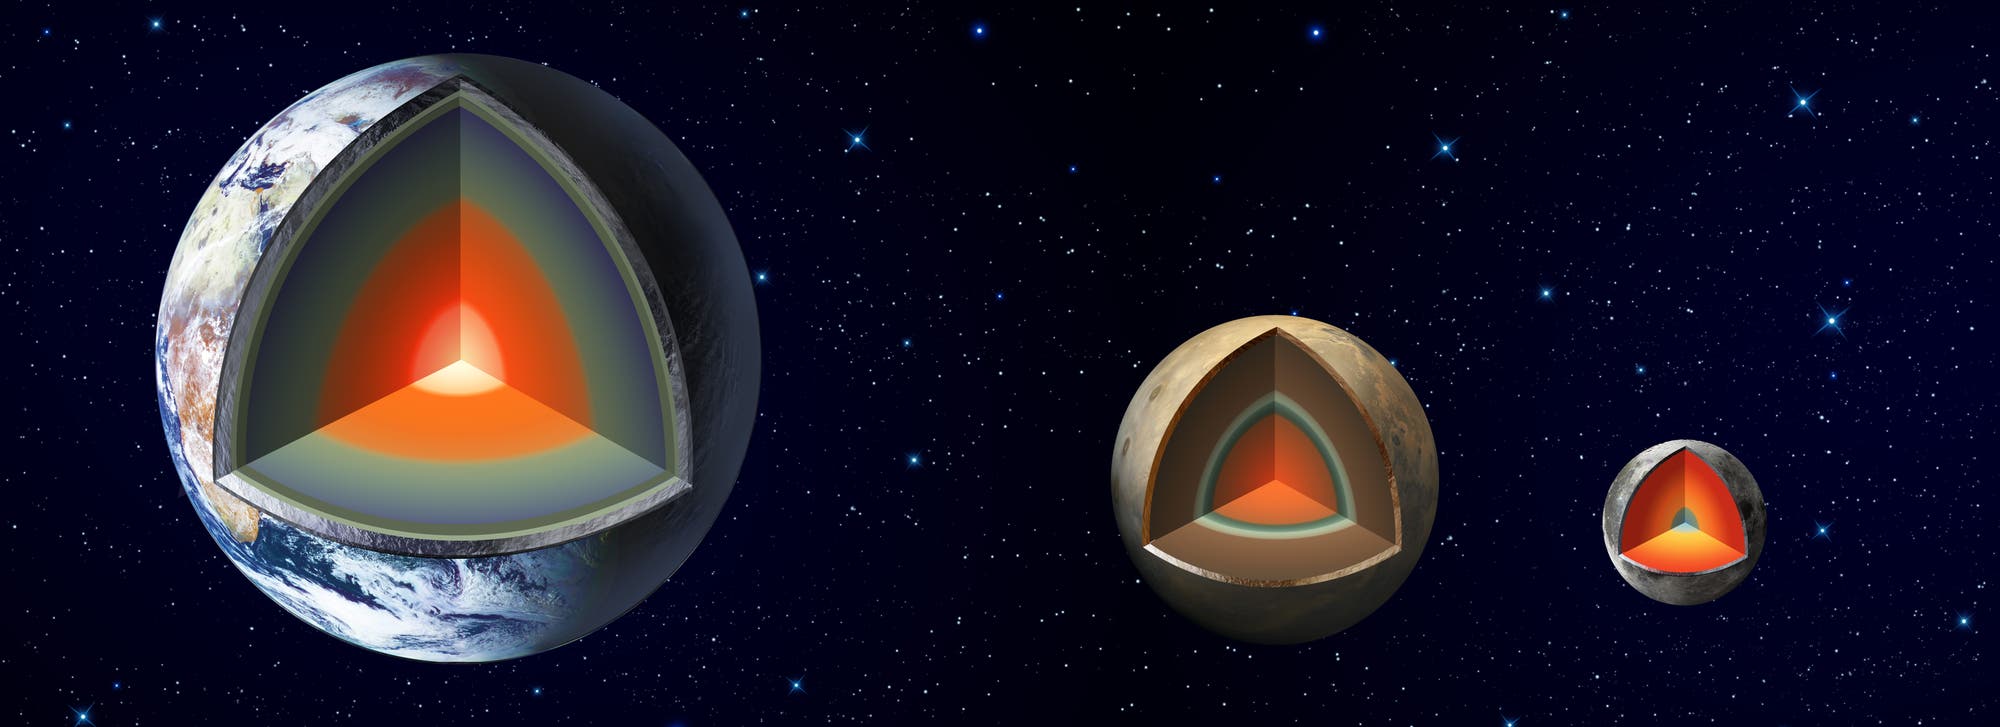 Der innere Aufbau von Erde, Mars und Mond im Vergleich